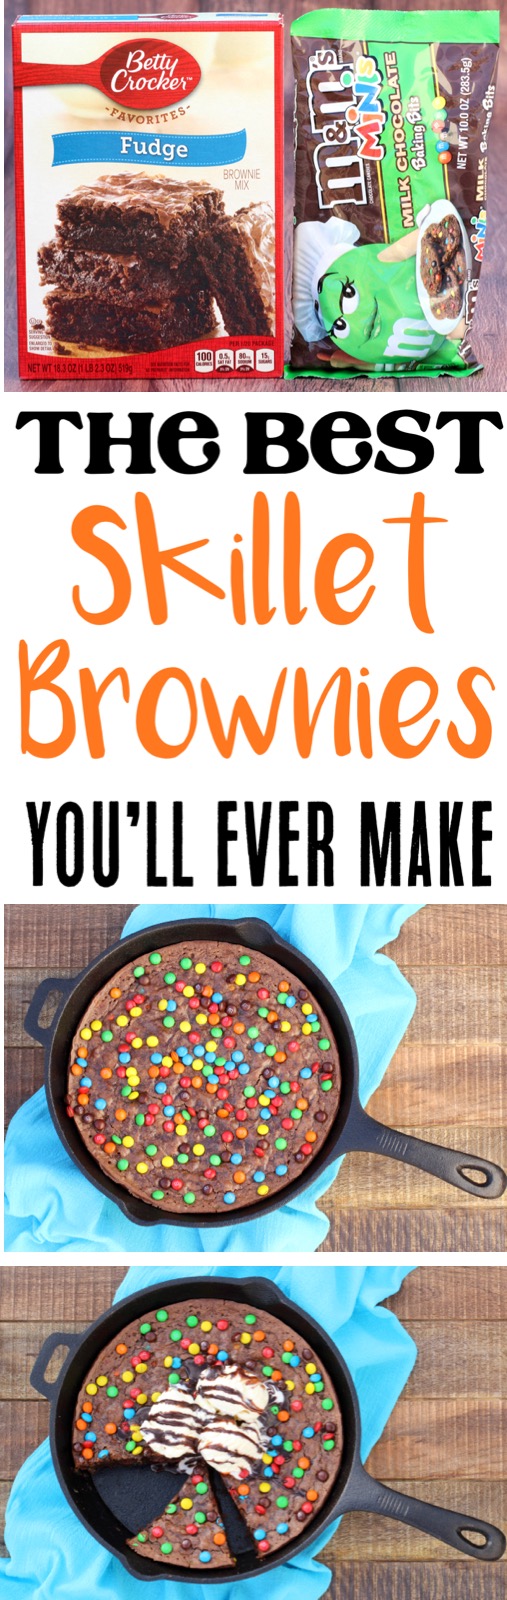 Brownie Recipes Easy Simple 5 Ingredient Brownies